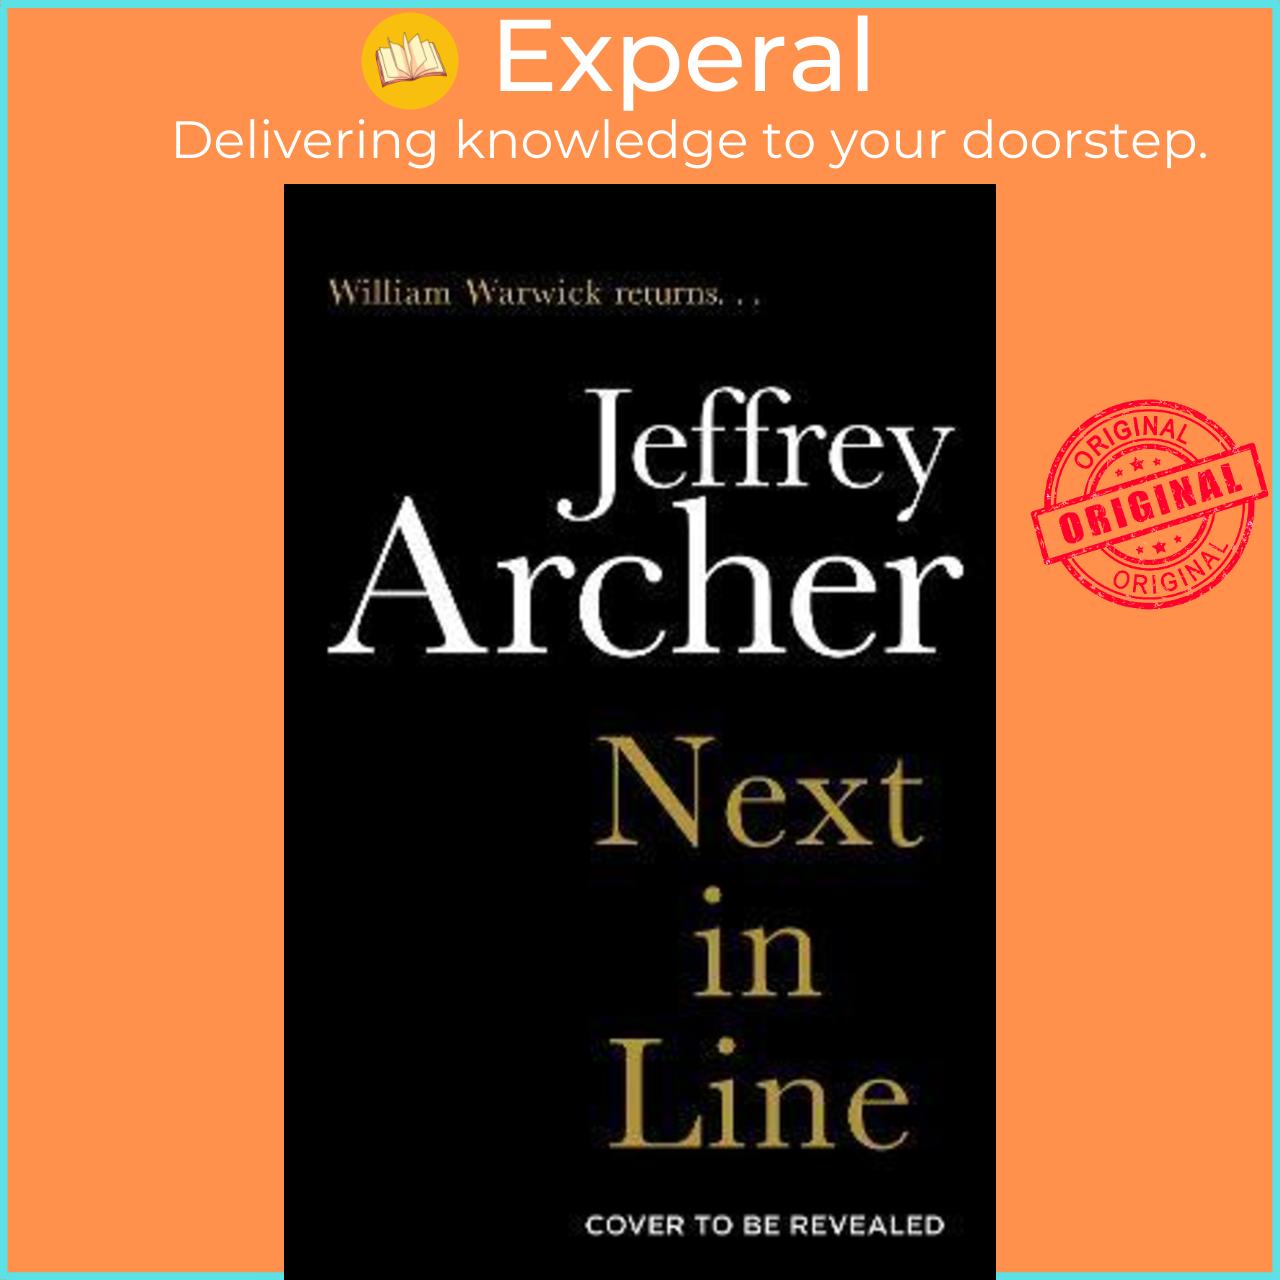 Sách - Next in Line by Jeffrey Archer (UK edition, paperback)